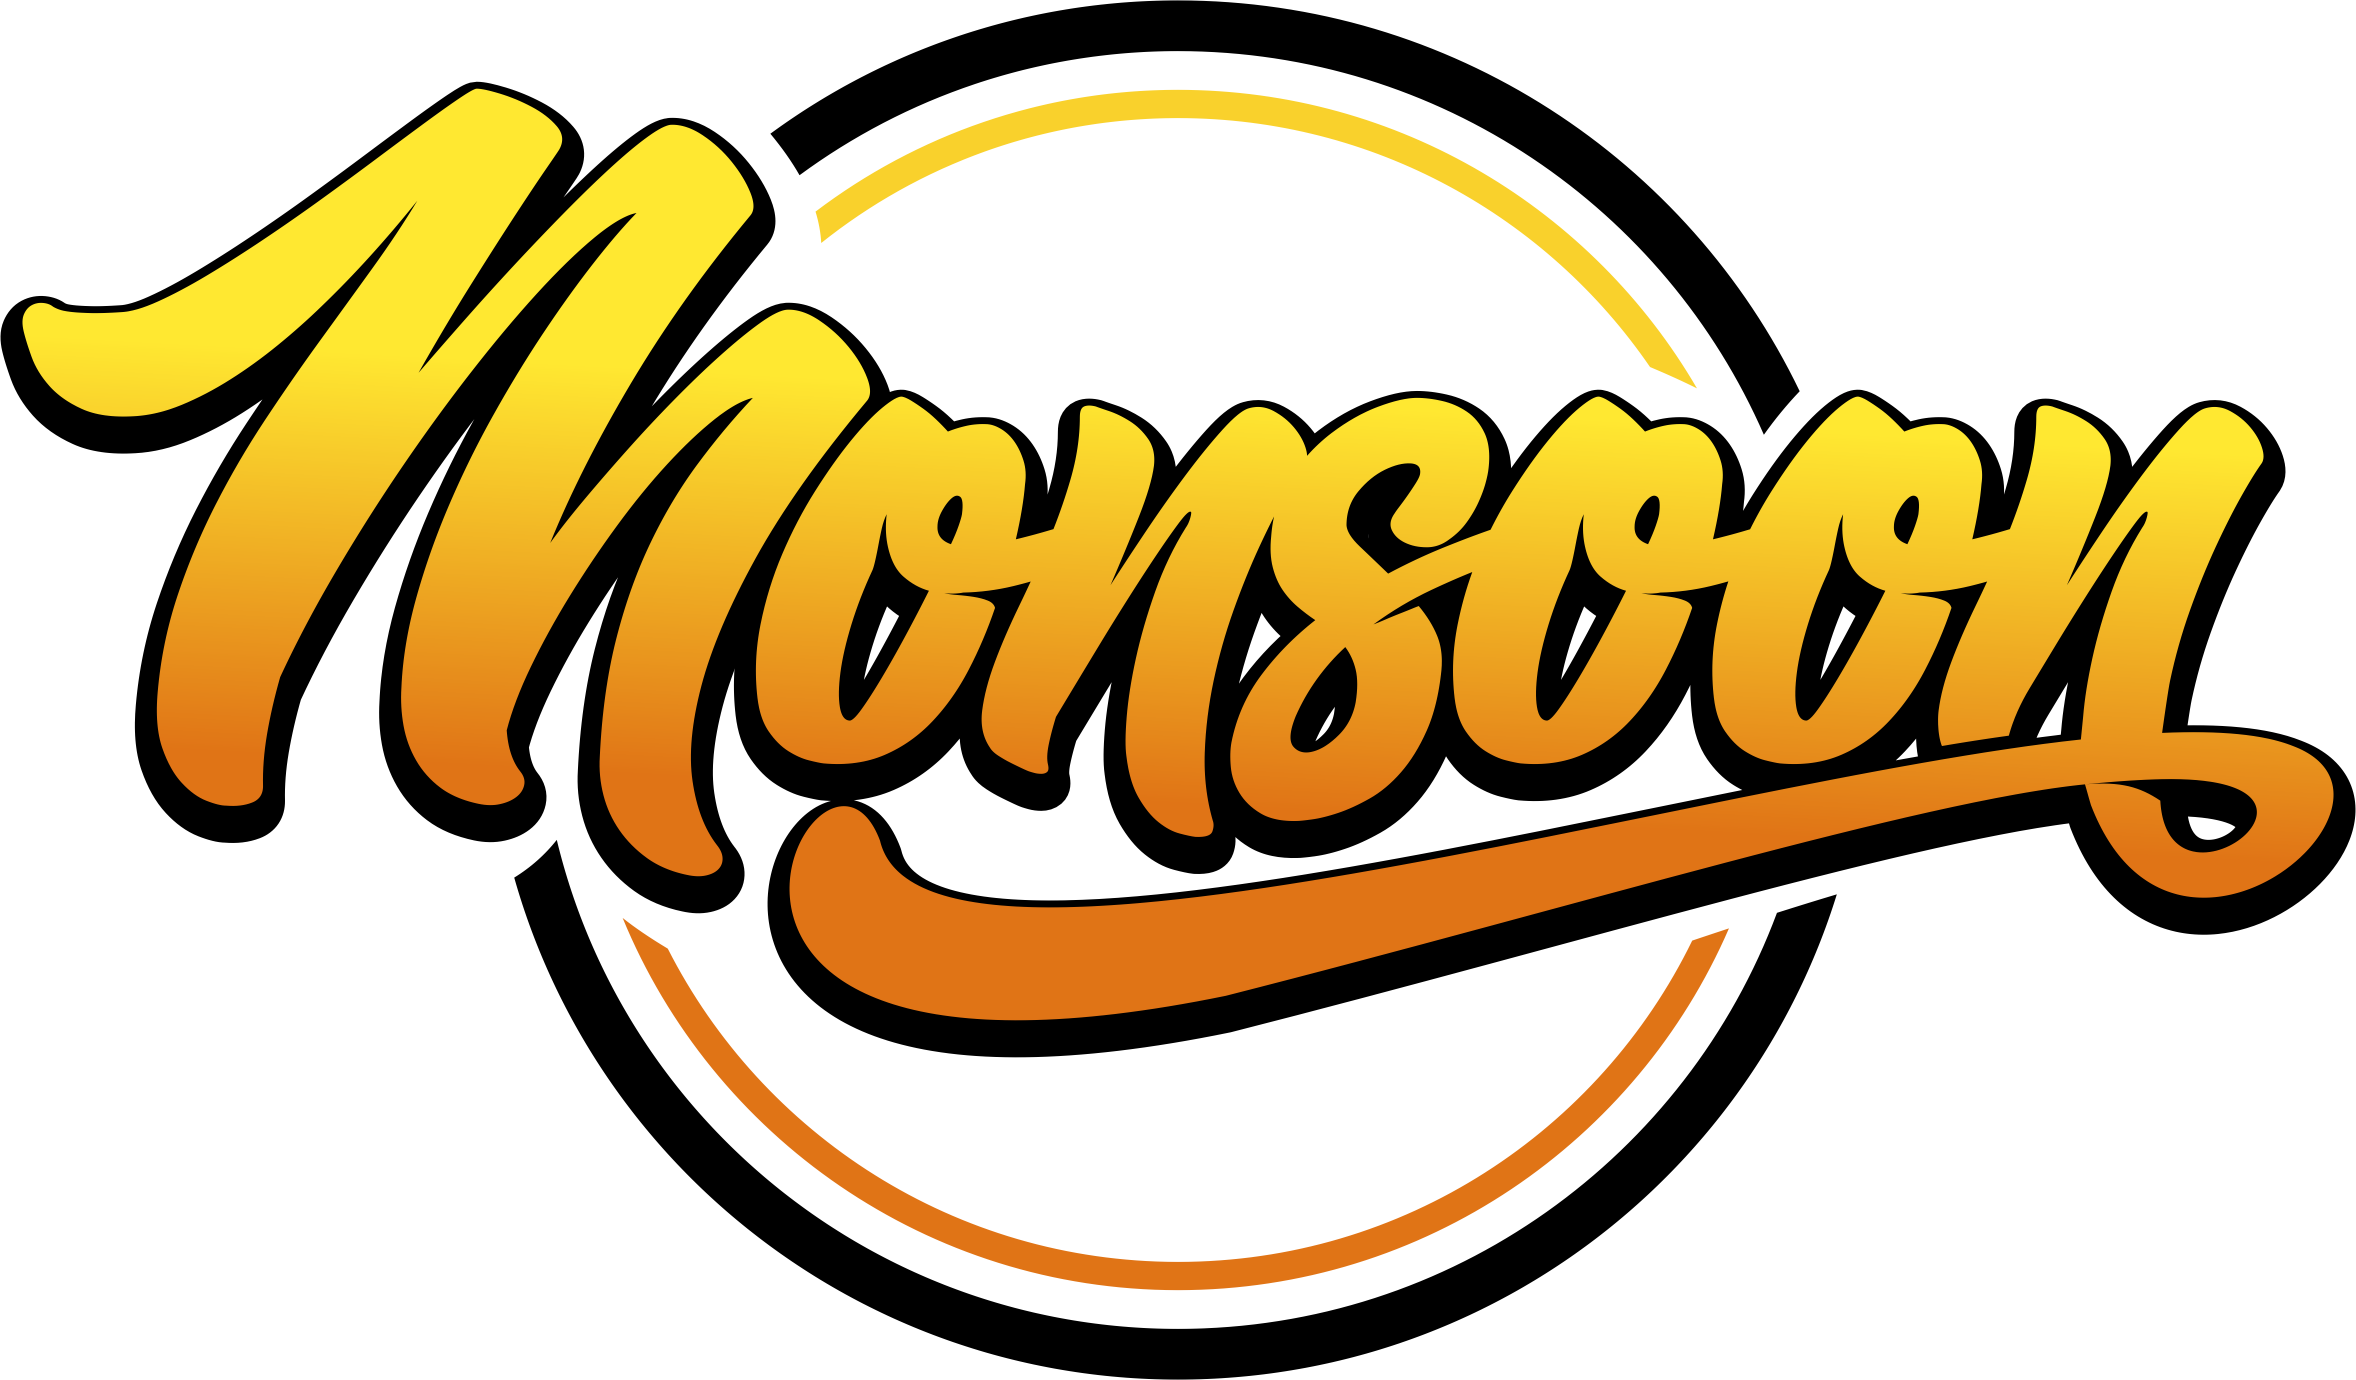 SALE: MONSOON Liquid MINUS 20%!